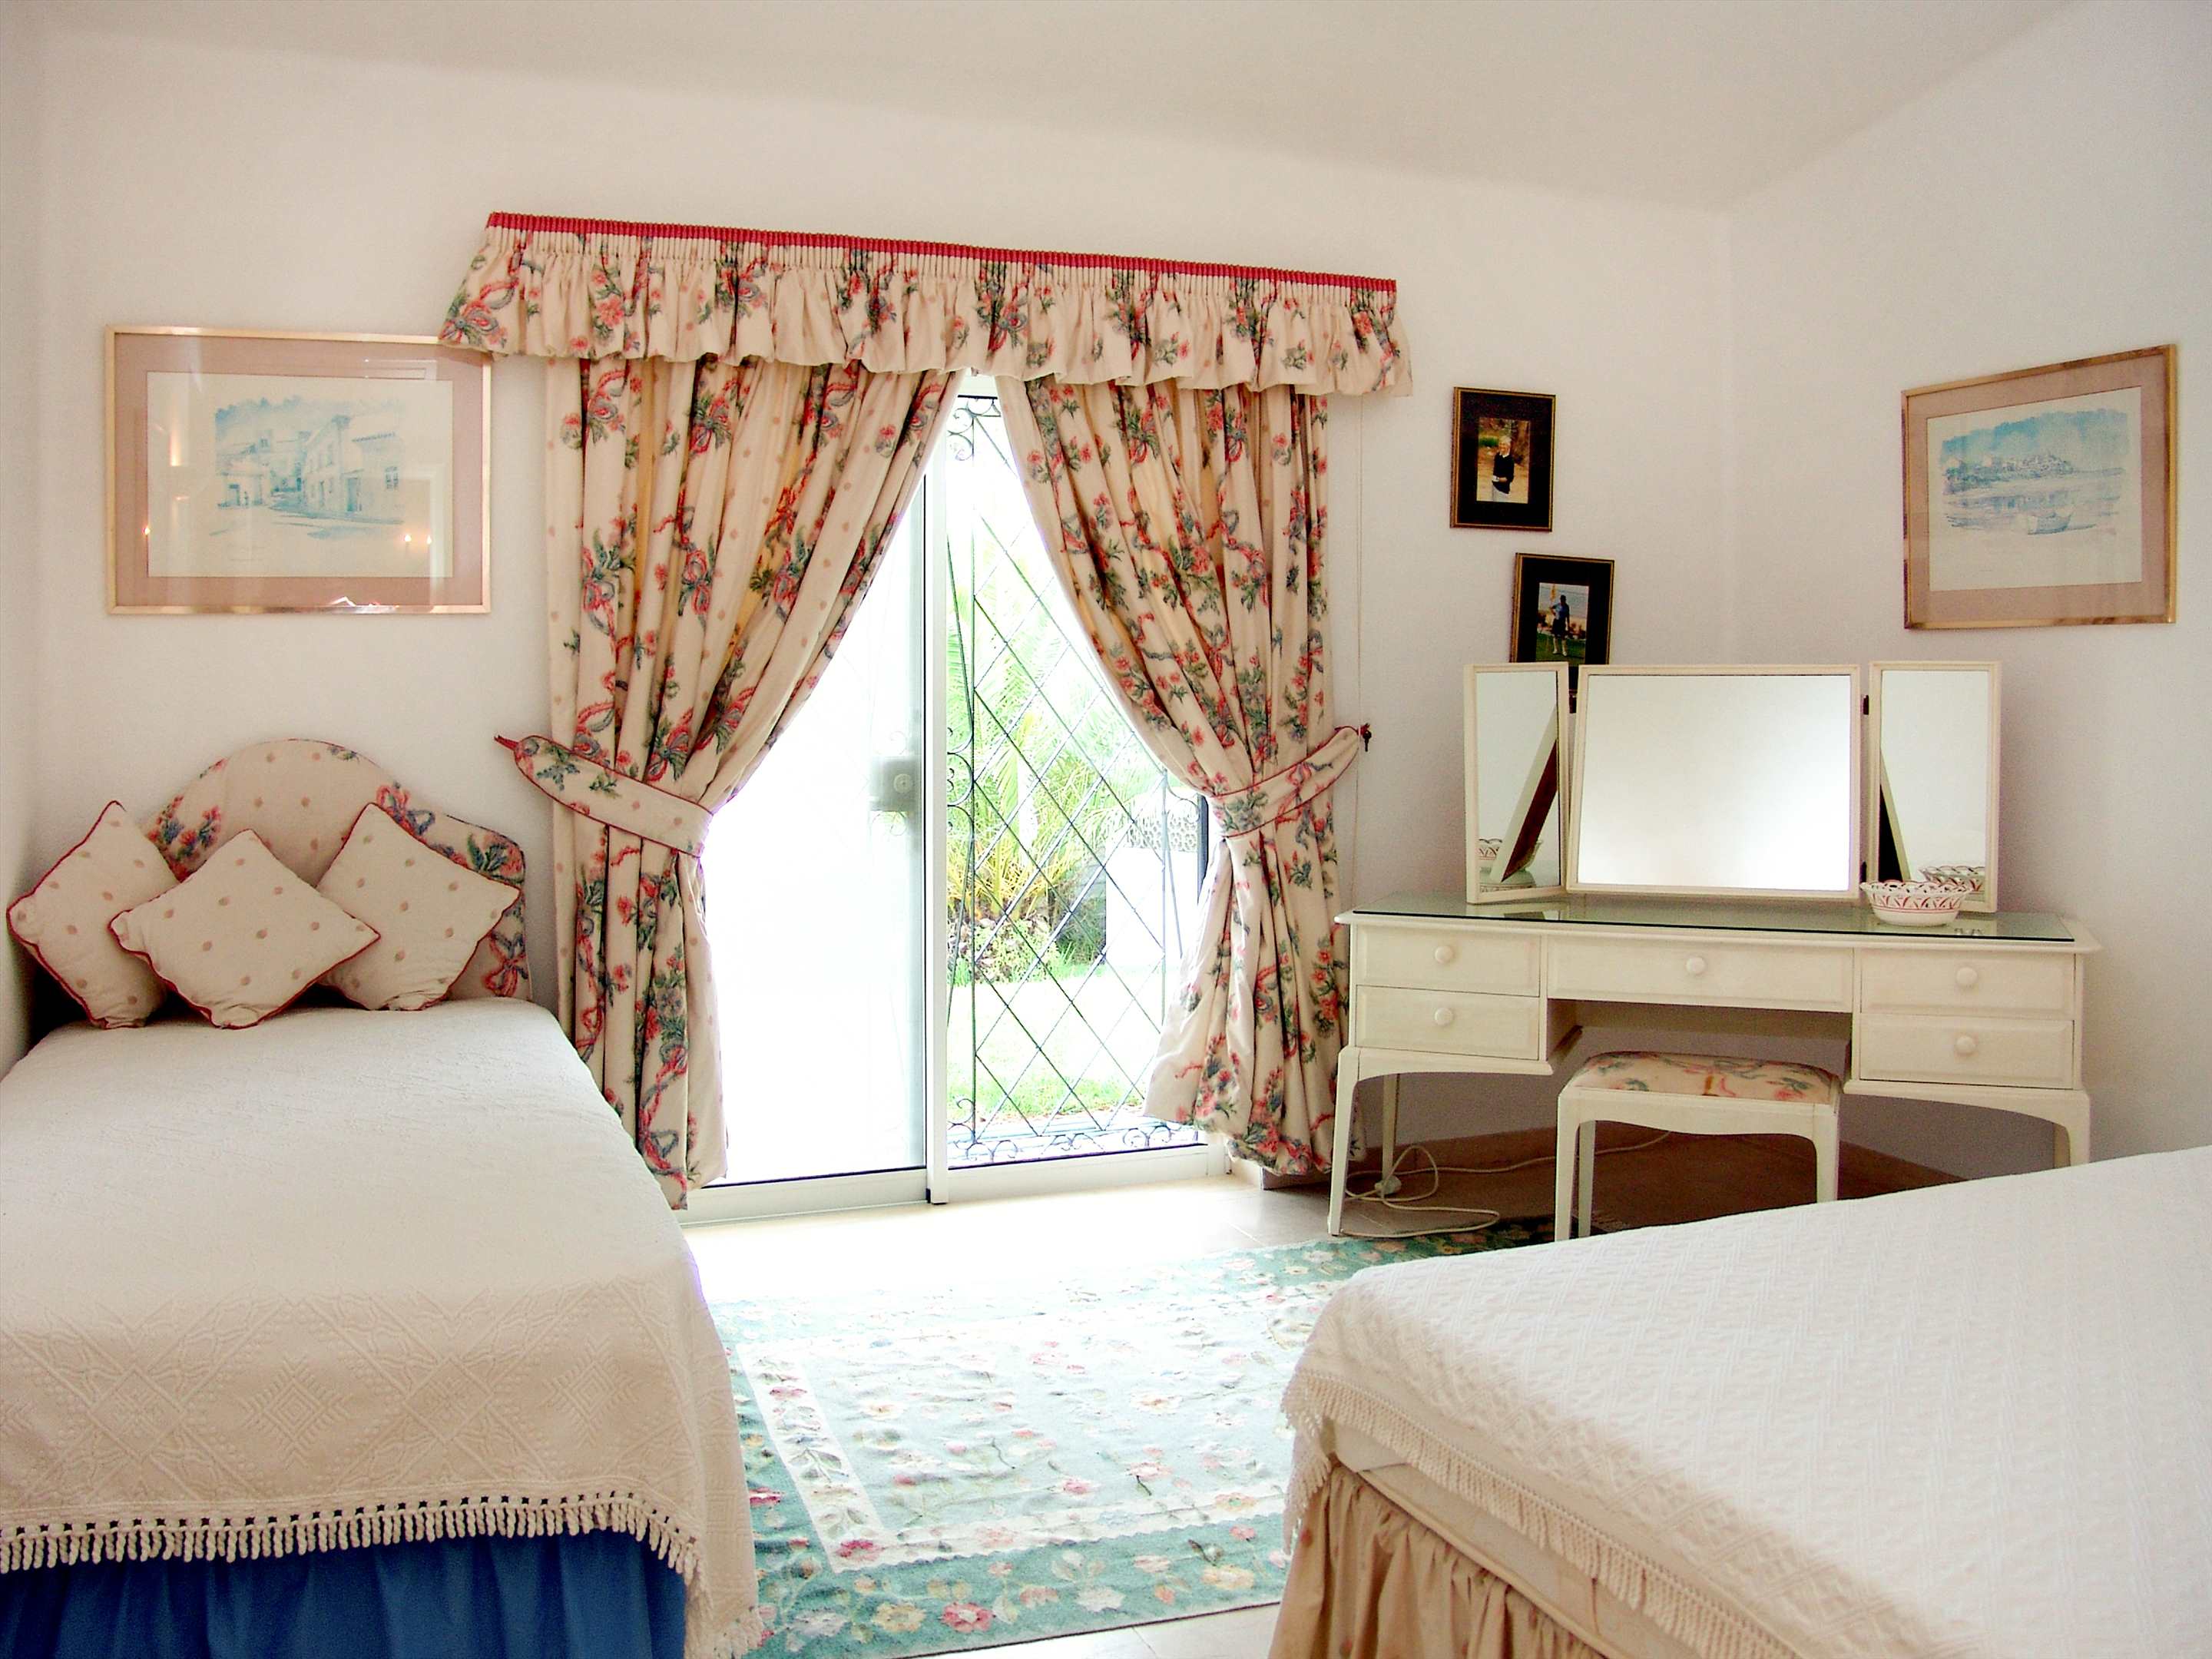 Villa Das Felicidades, 4 bedroom villa in Vale do Lobo, Algarve Photo #17